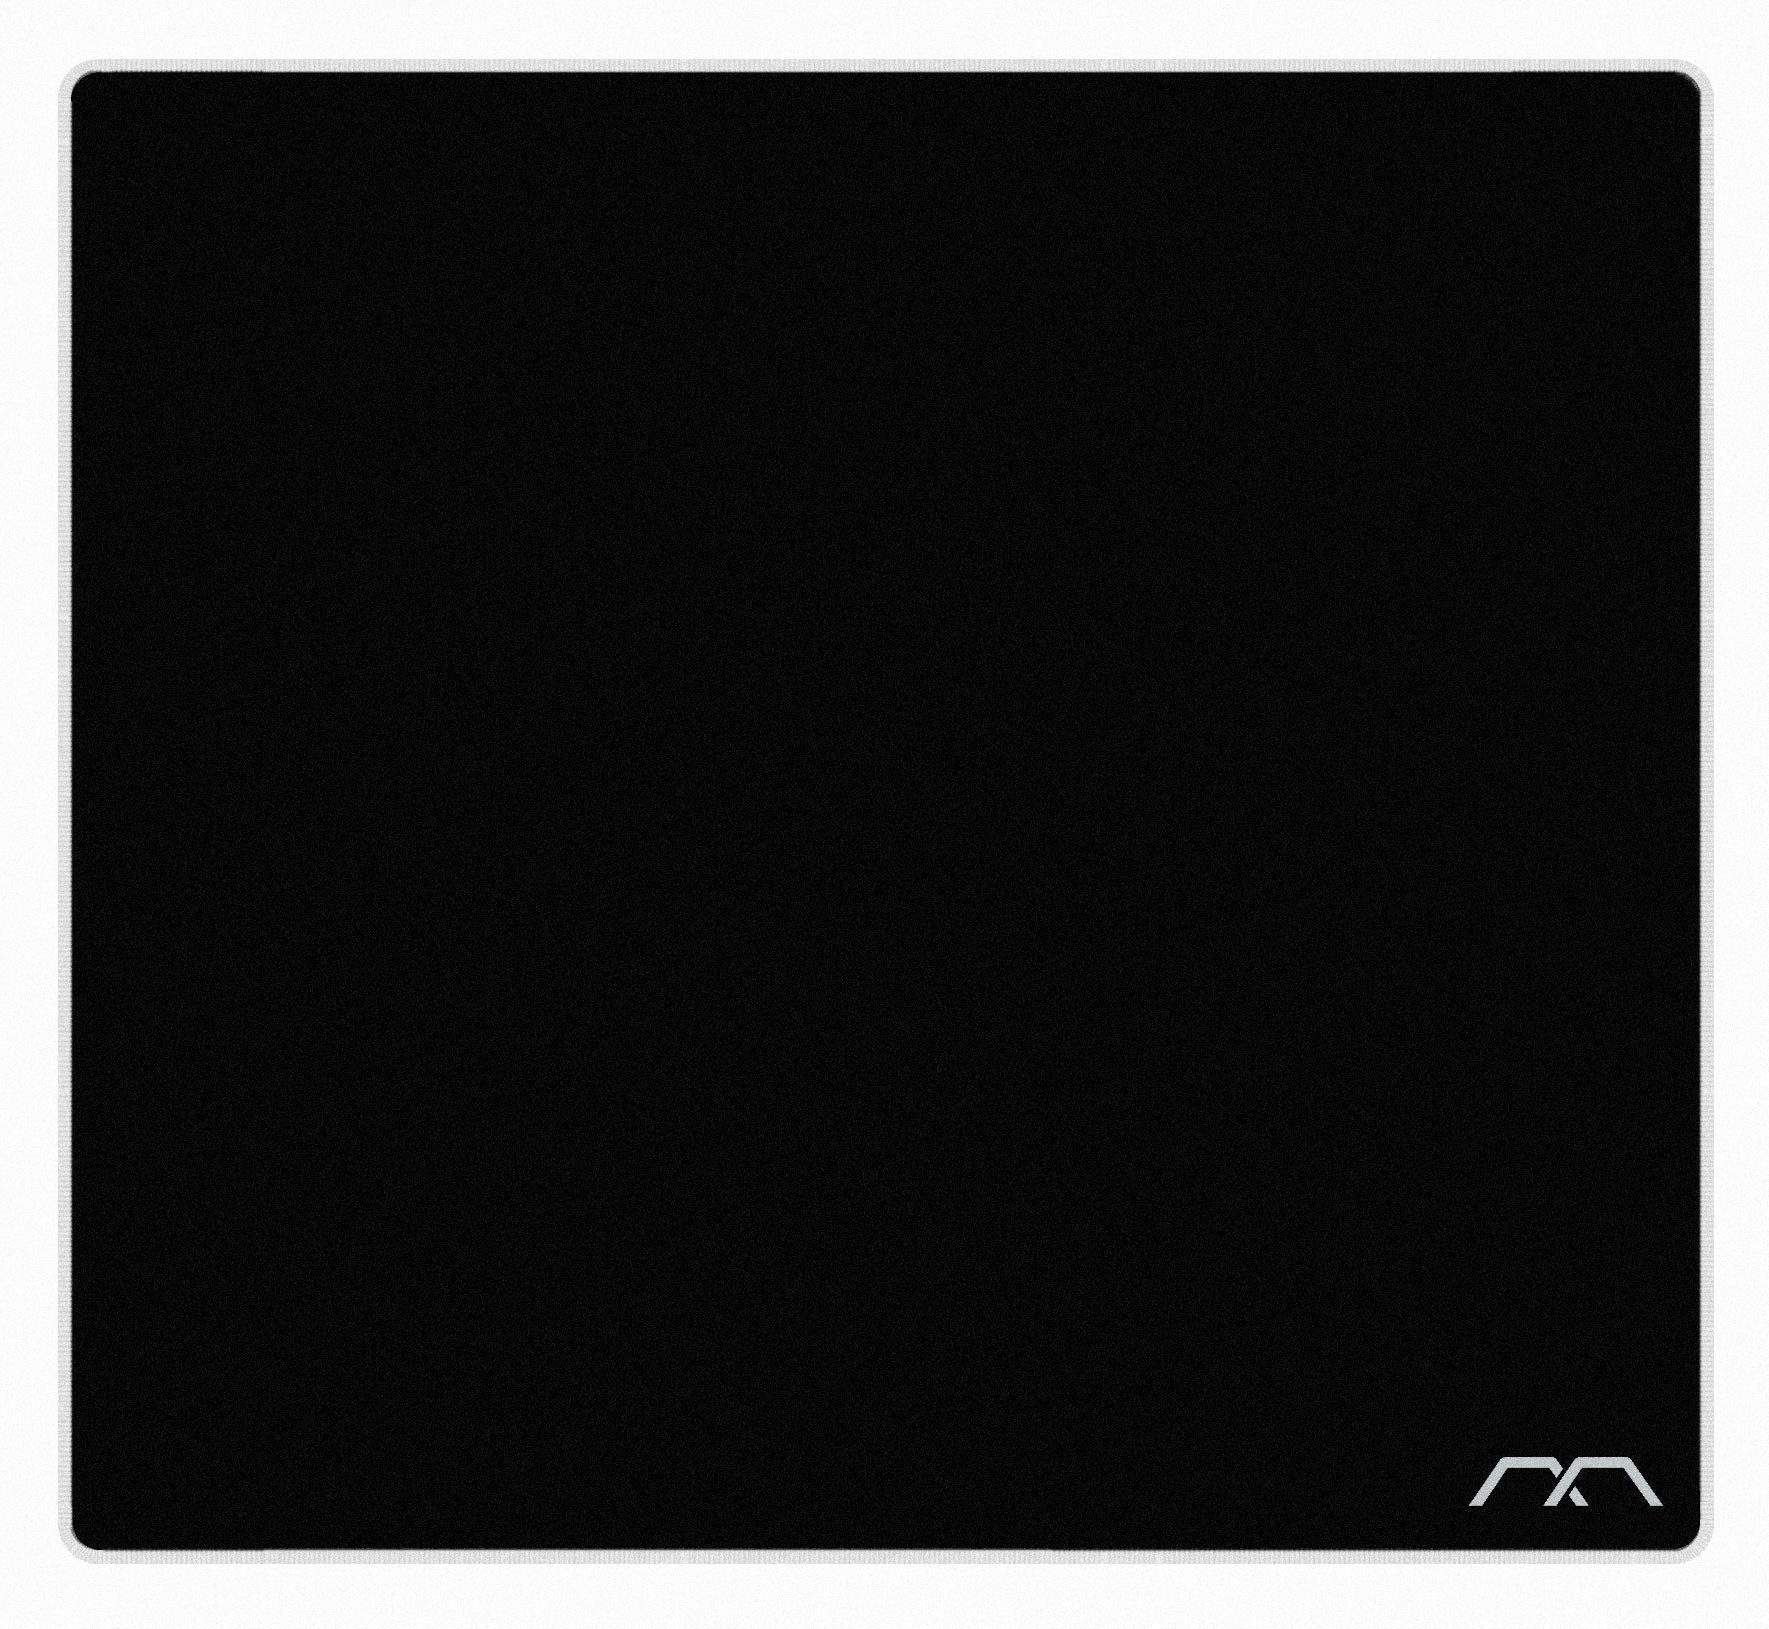 MK Meta Black Large  Desk Mat MKEEW4WB9E |0|